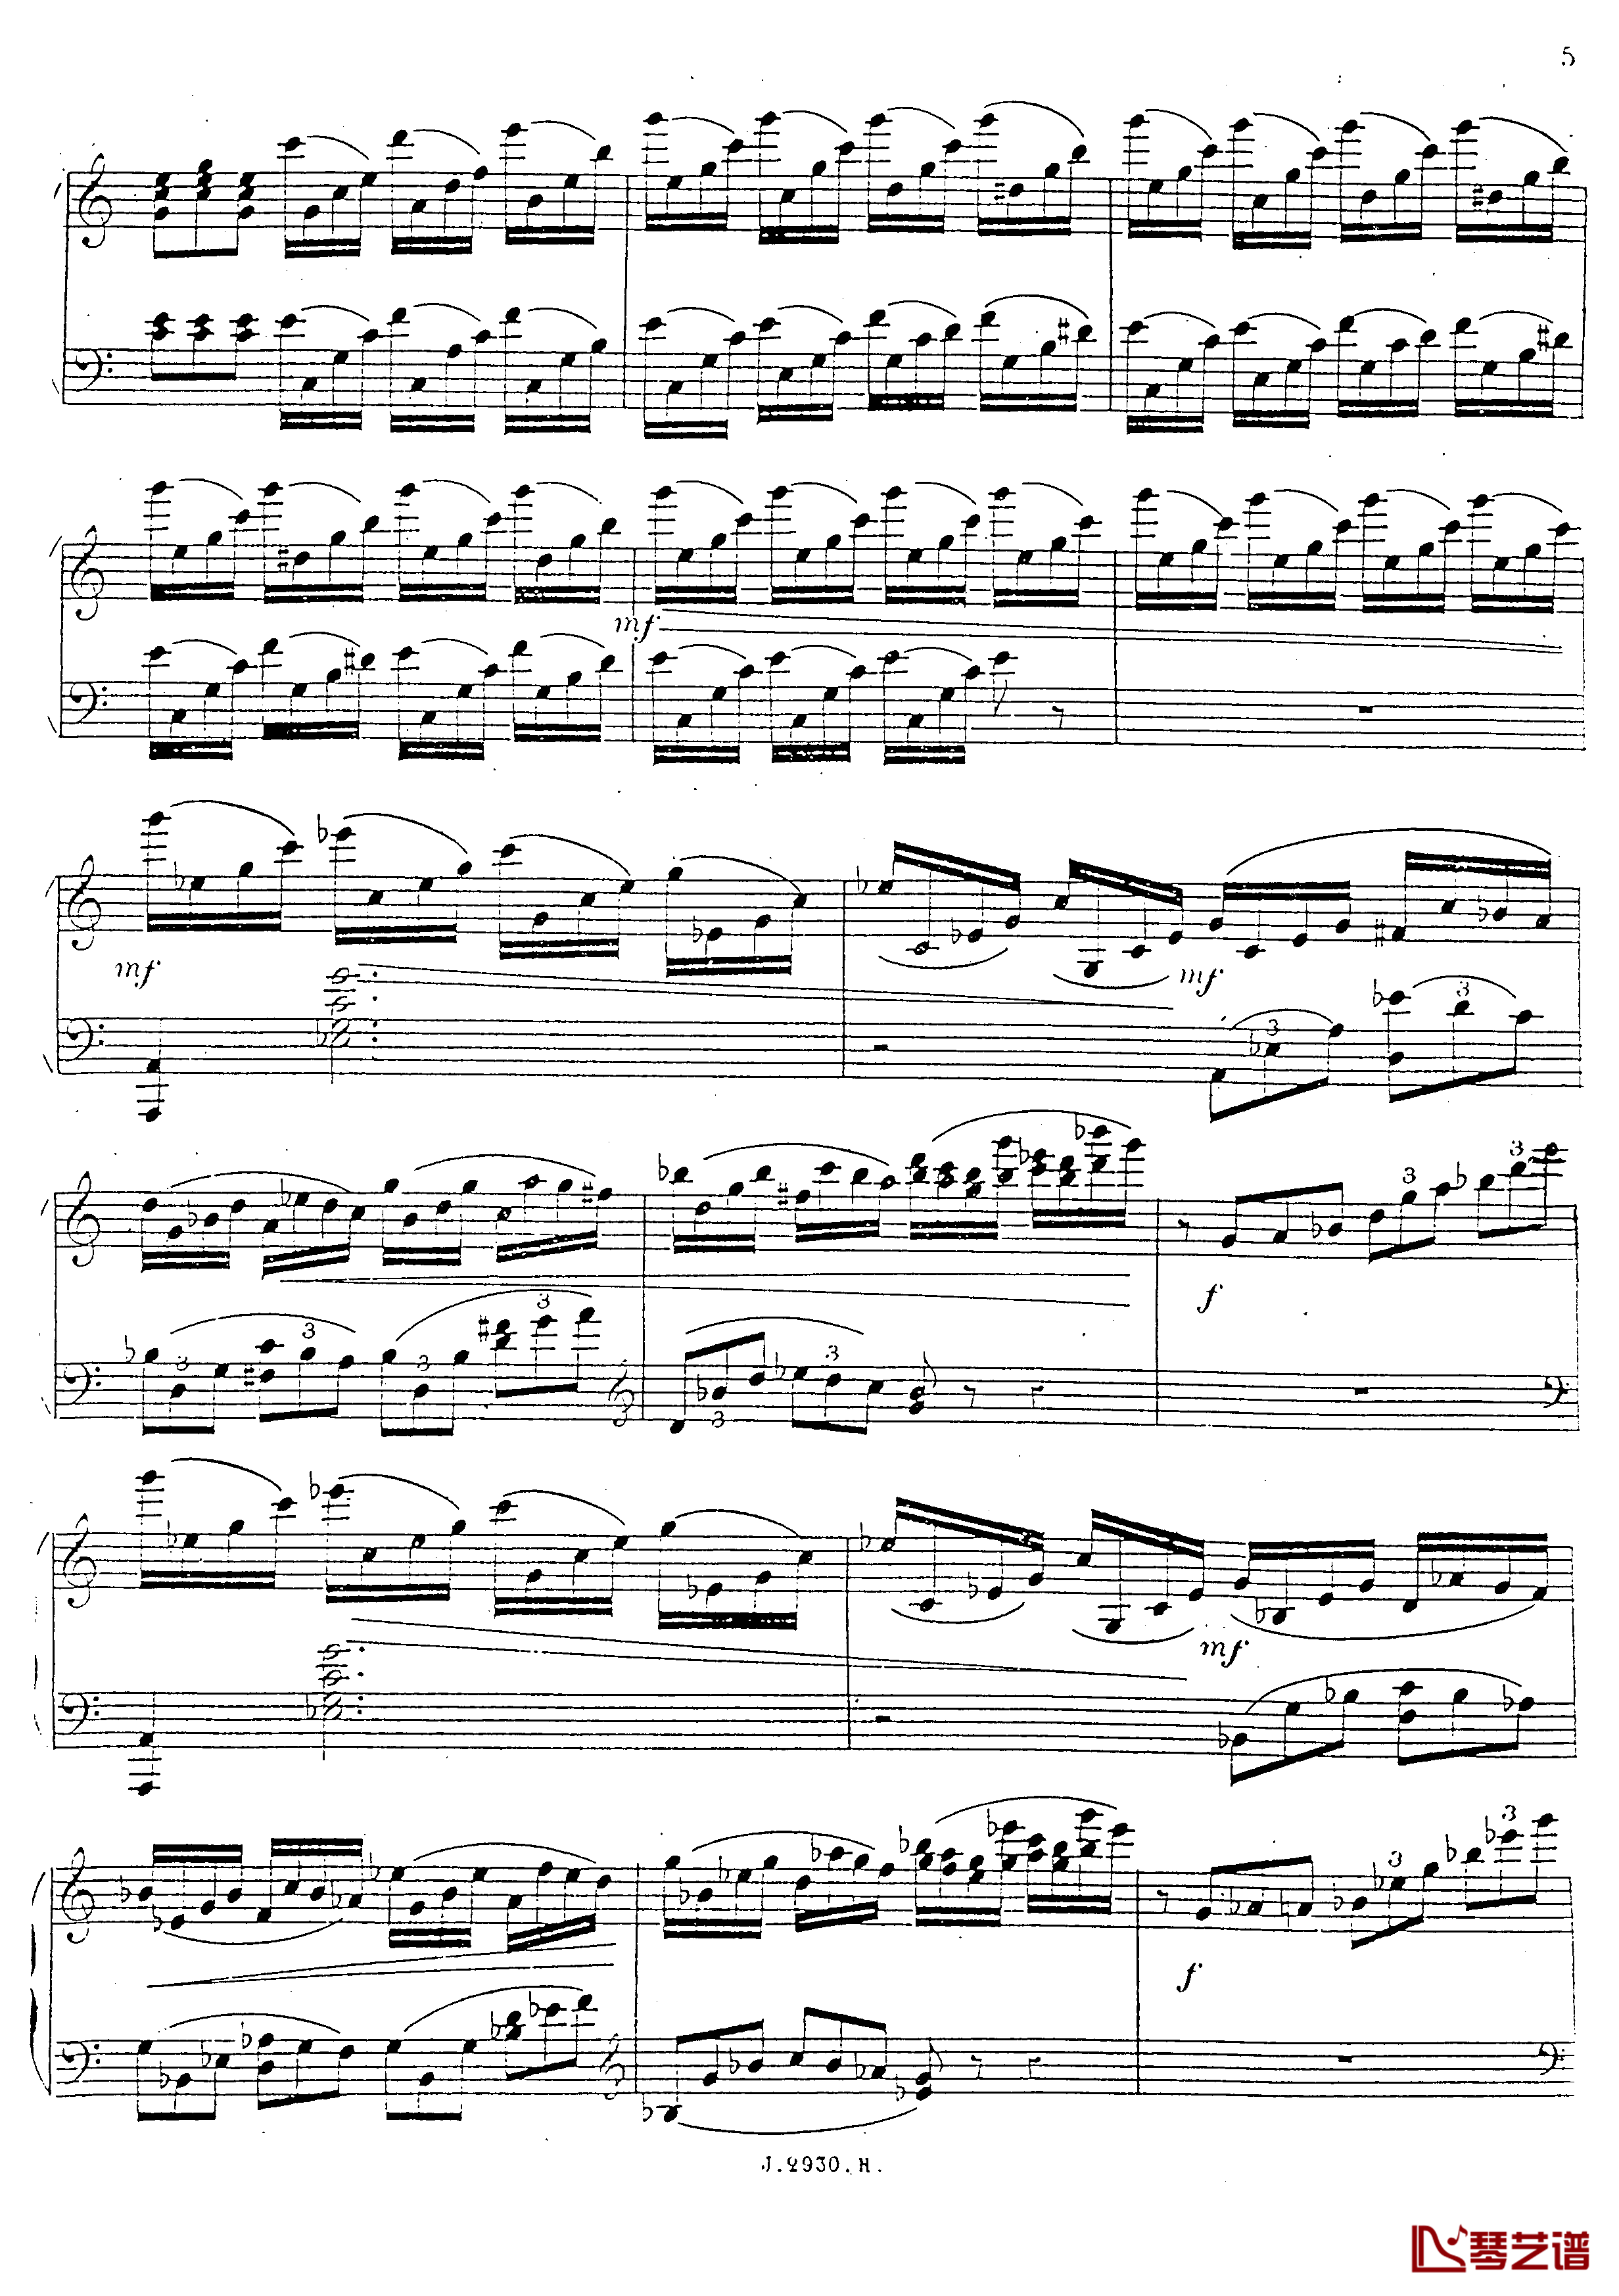 a小调第四钢琴奏鸣曲钢琴谱-安东 鲁宾斯坦- Op.1006